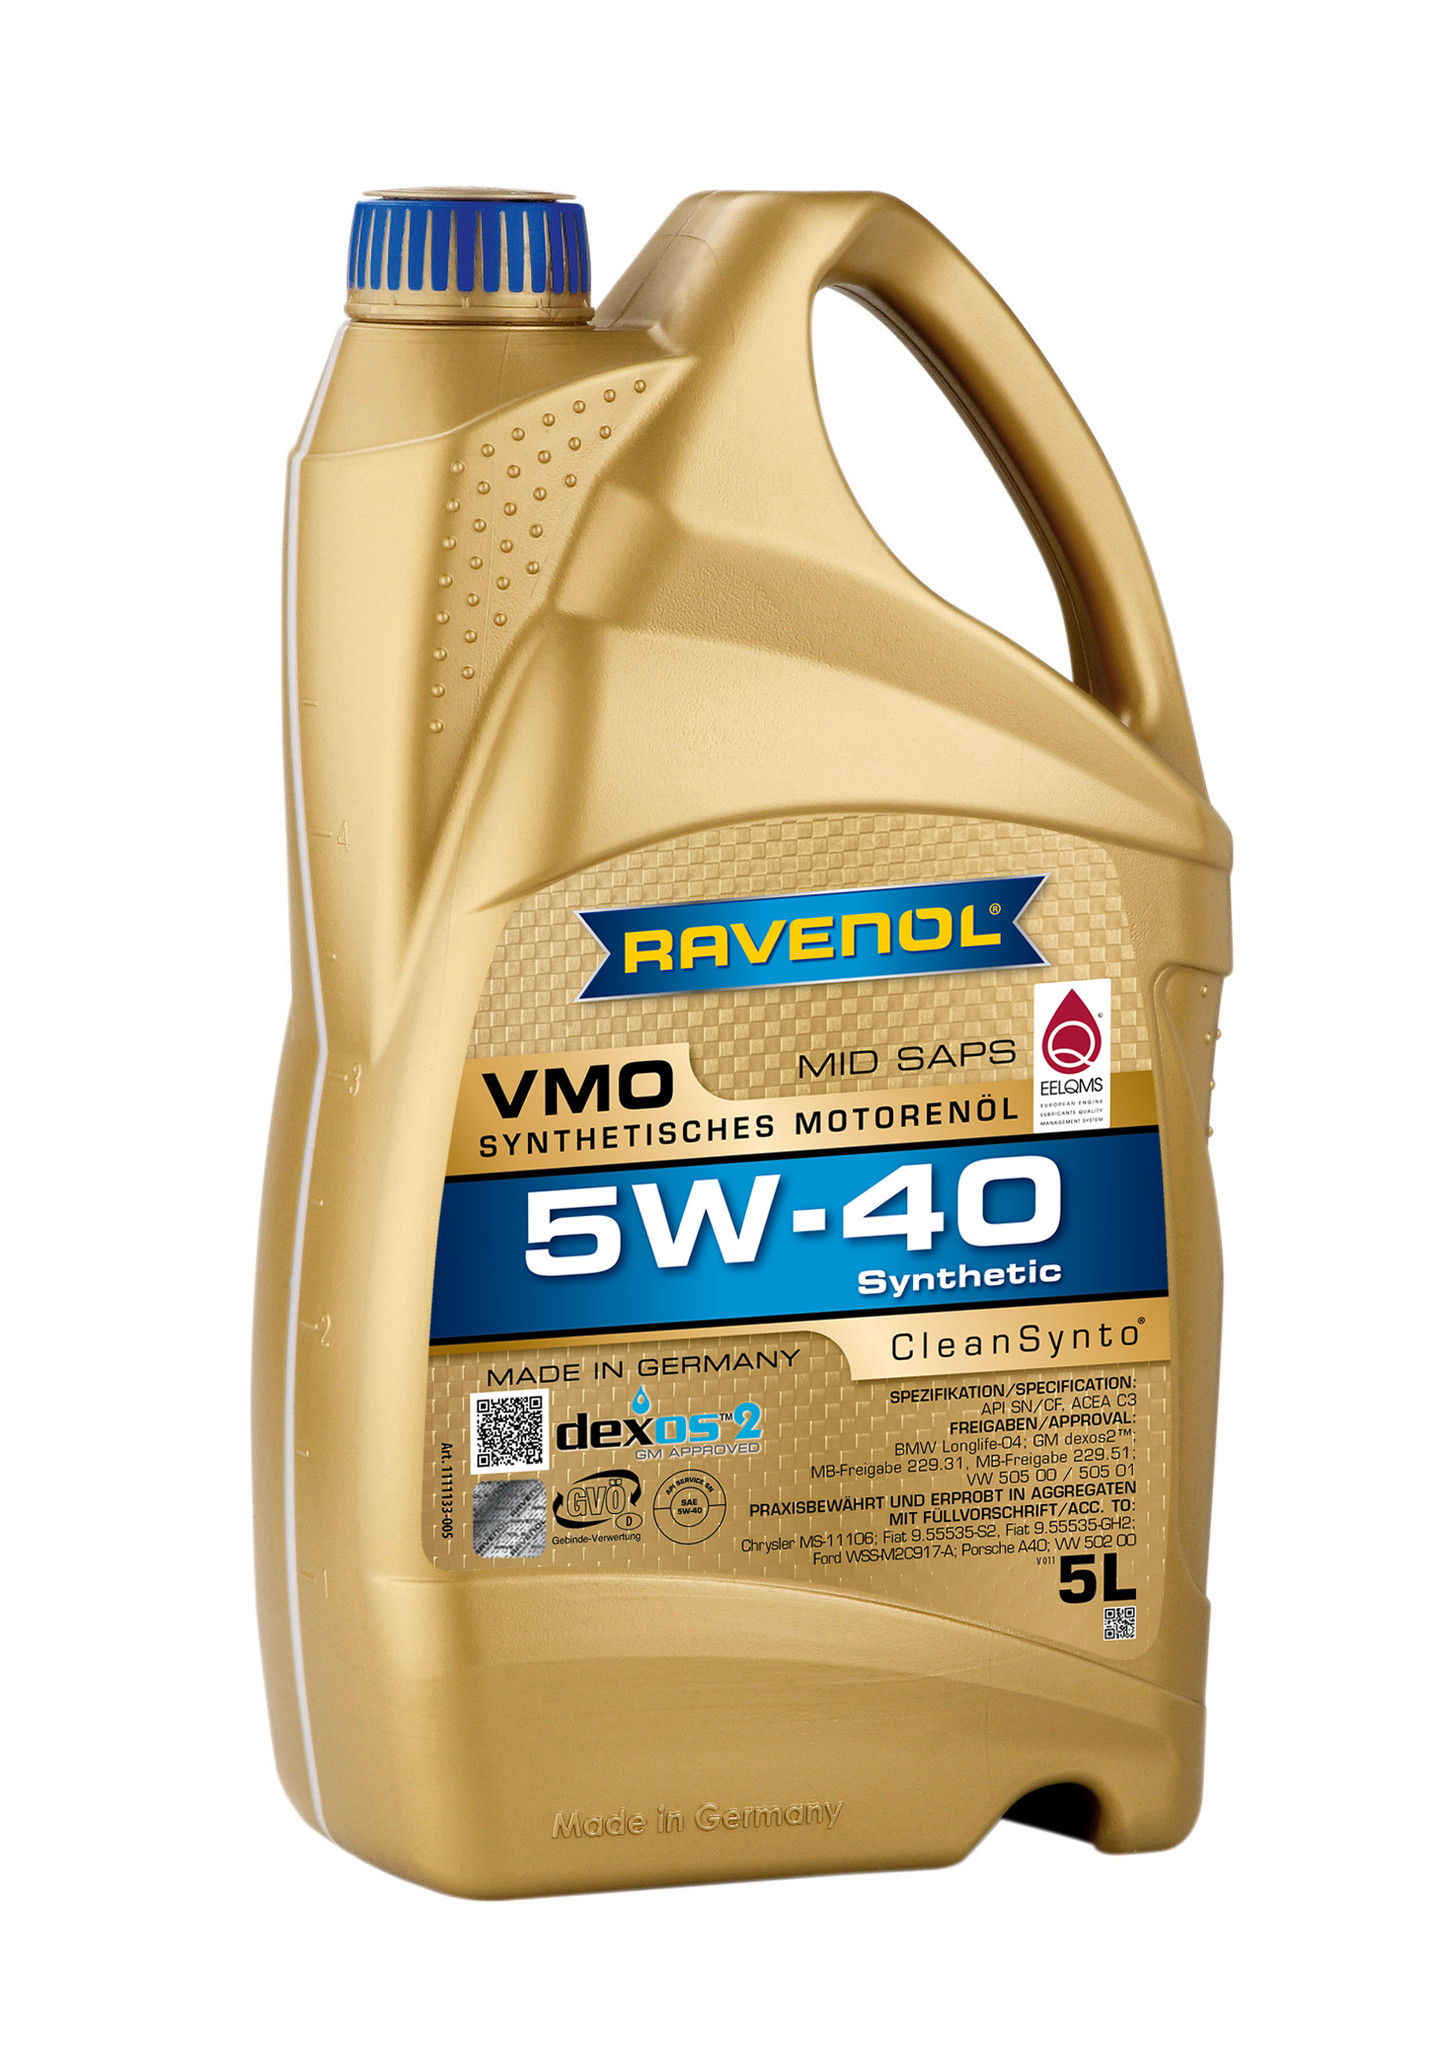 RAVENOL VMO SAE 5W-40 engine oil, 5W-40, Engine Oil Car / Transporter, Lubricants